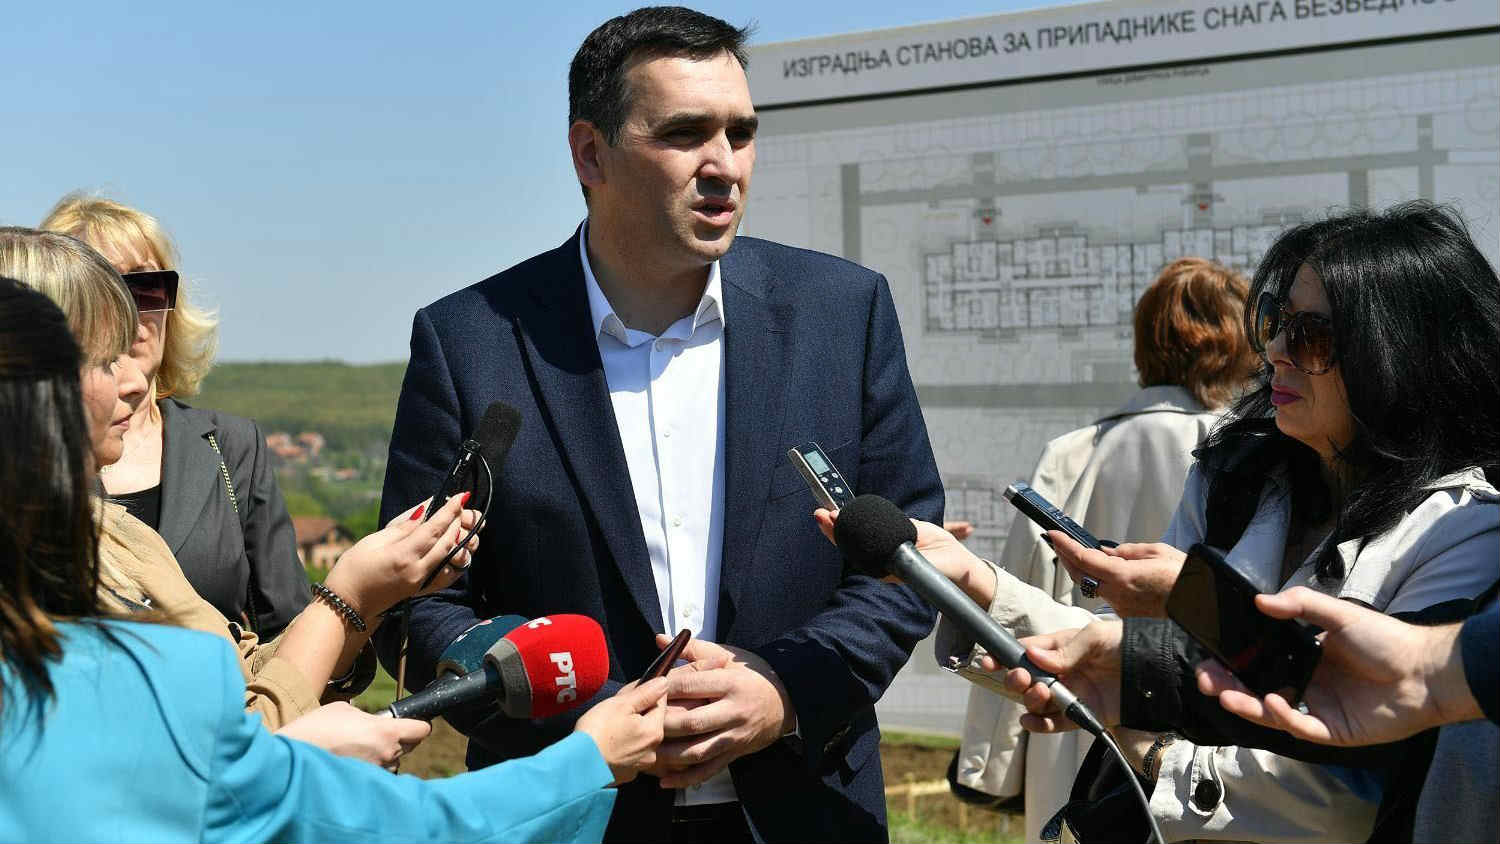 SNS prva predala listu GIK-u za lokalne izbore u Kragujevcu 1